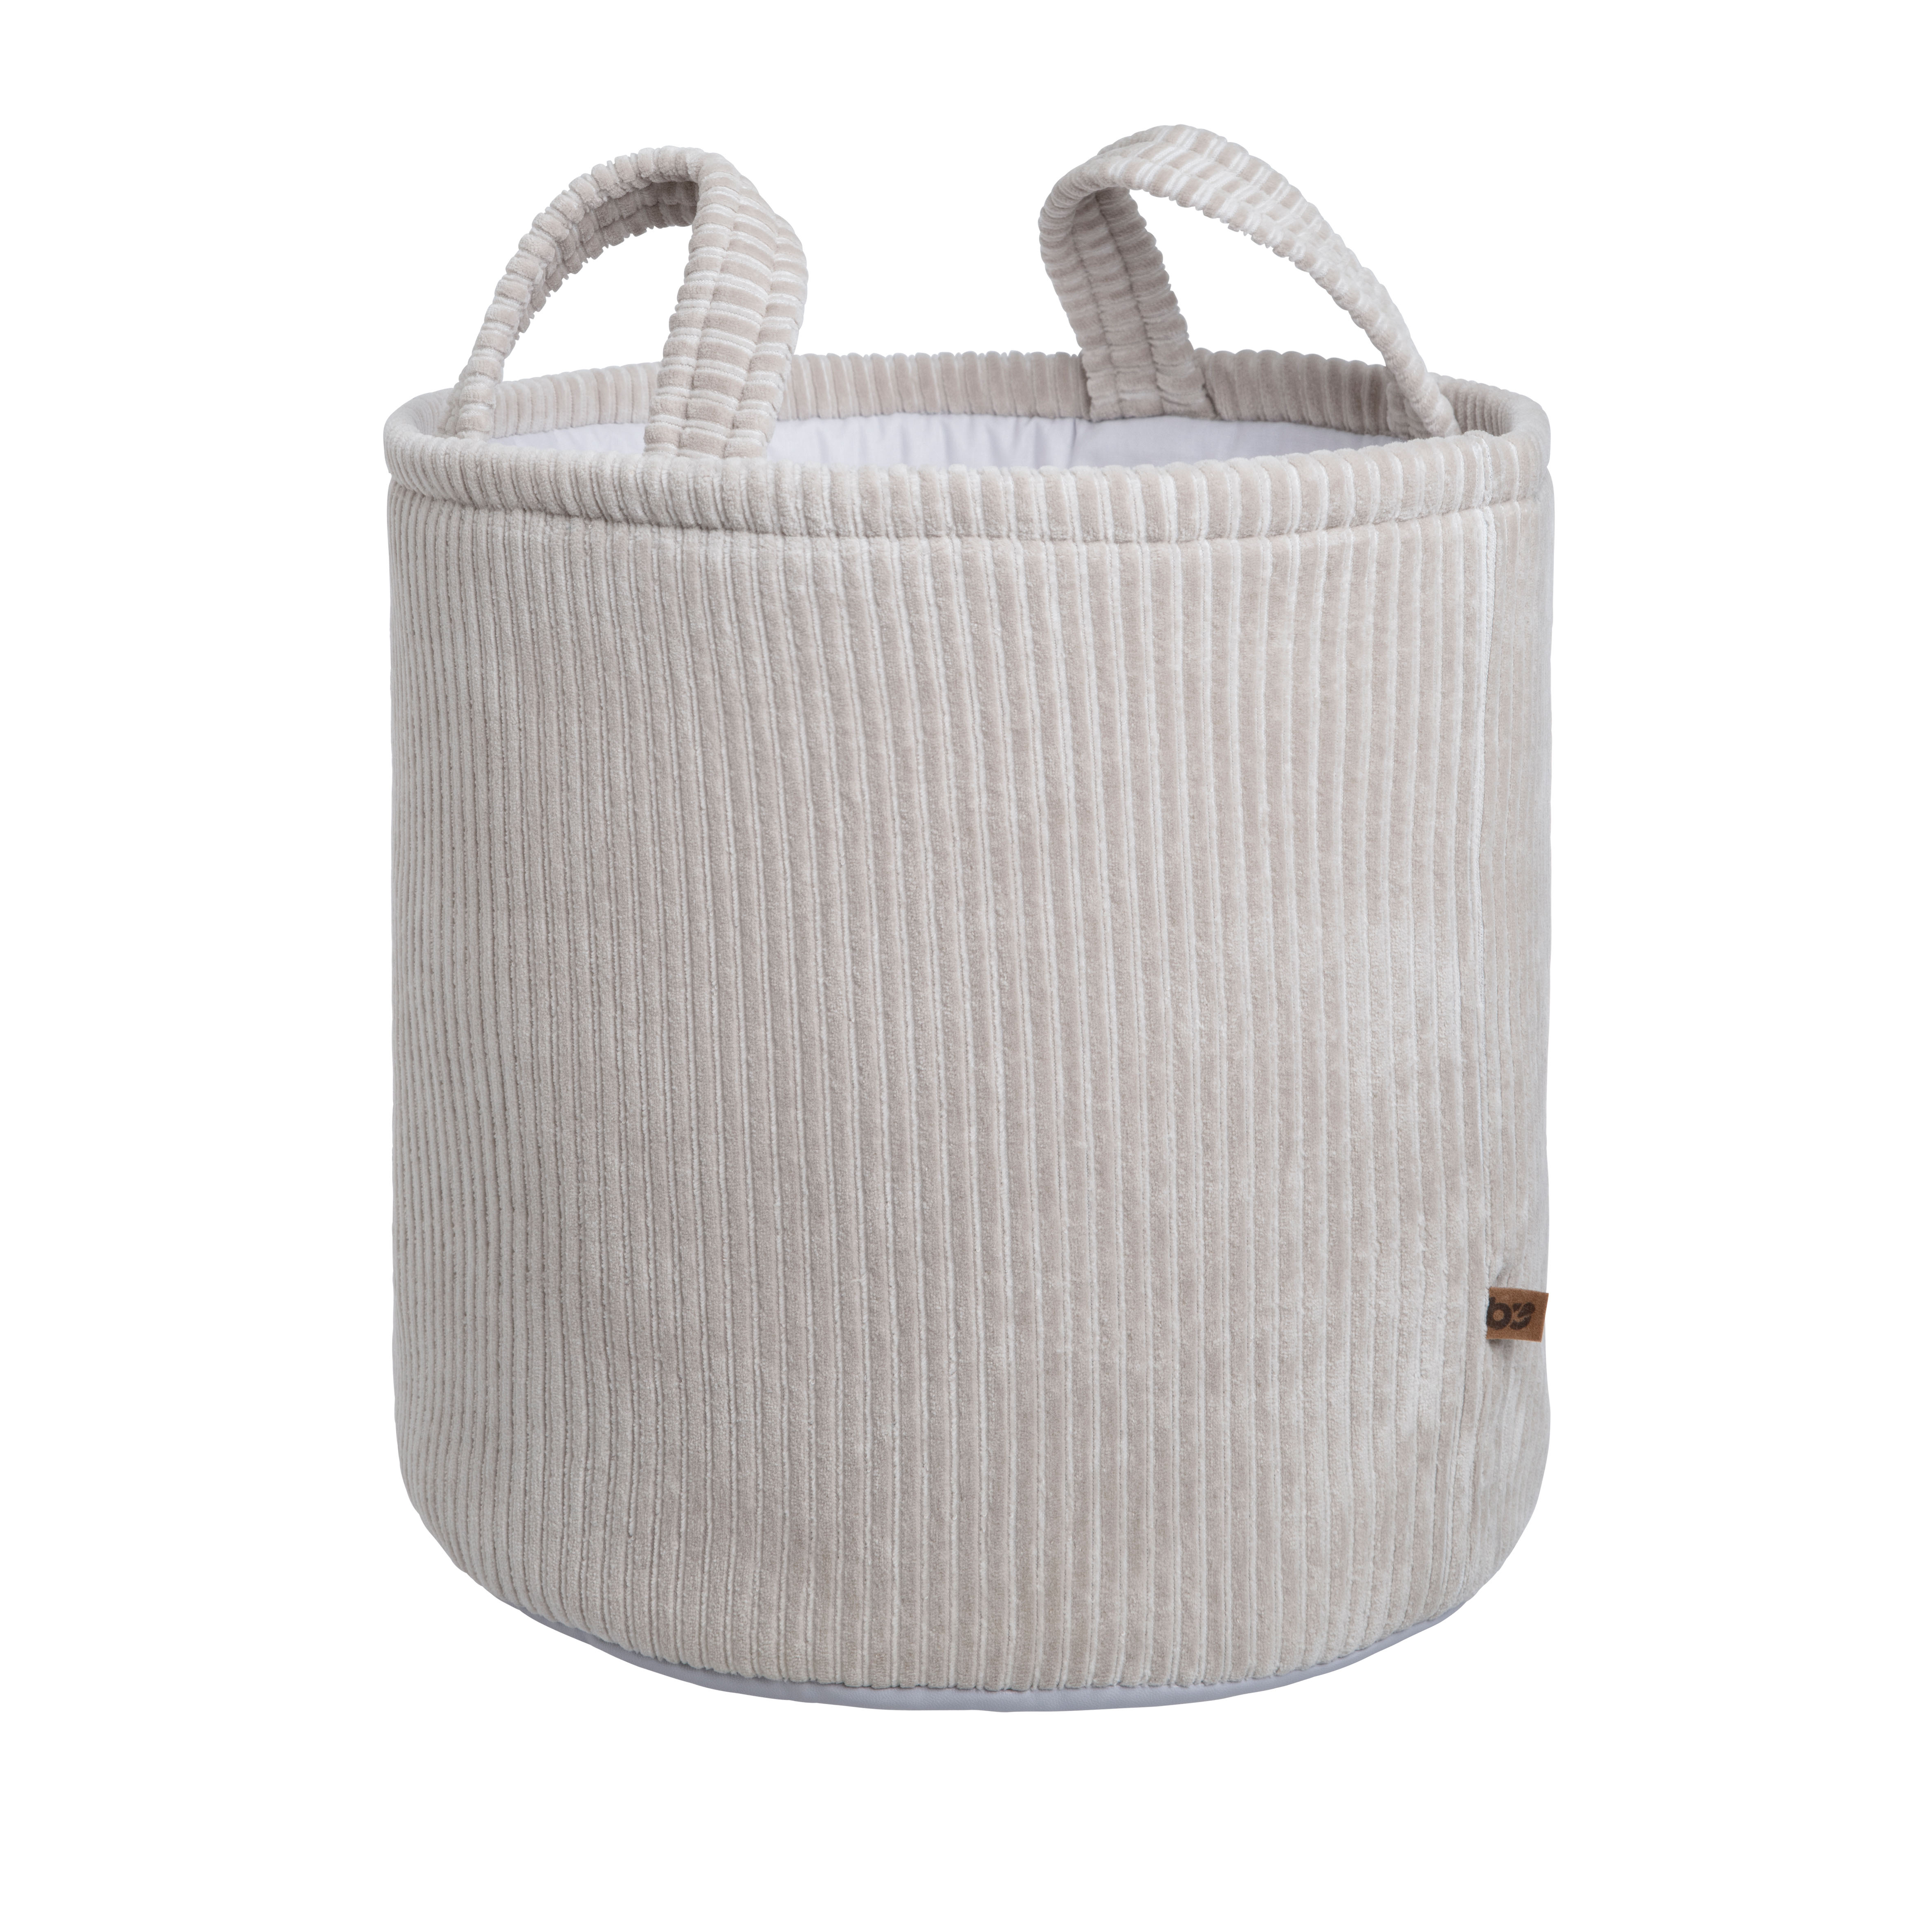 Storage basket Sense pebble grey - Ø38 cm